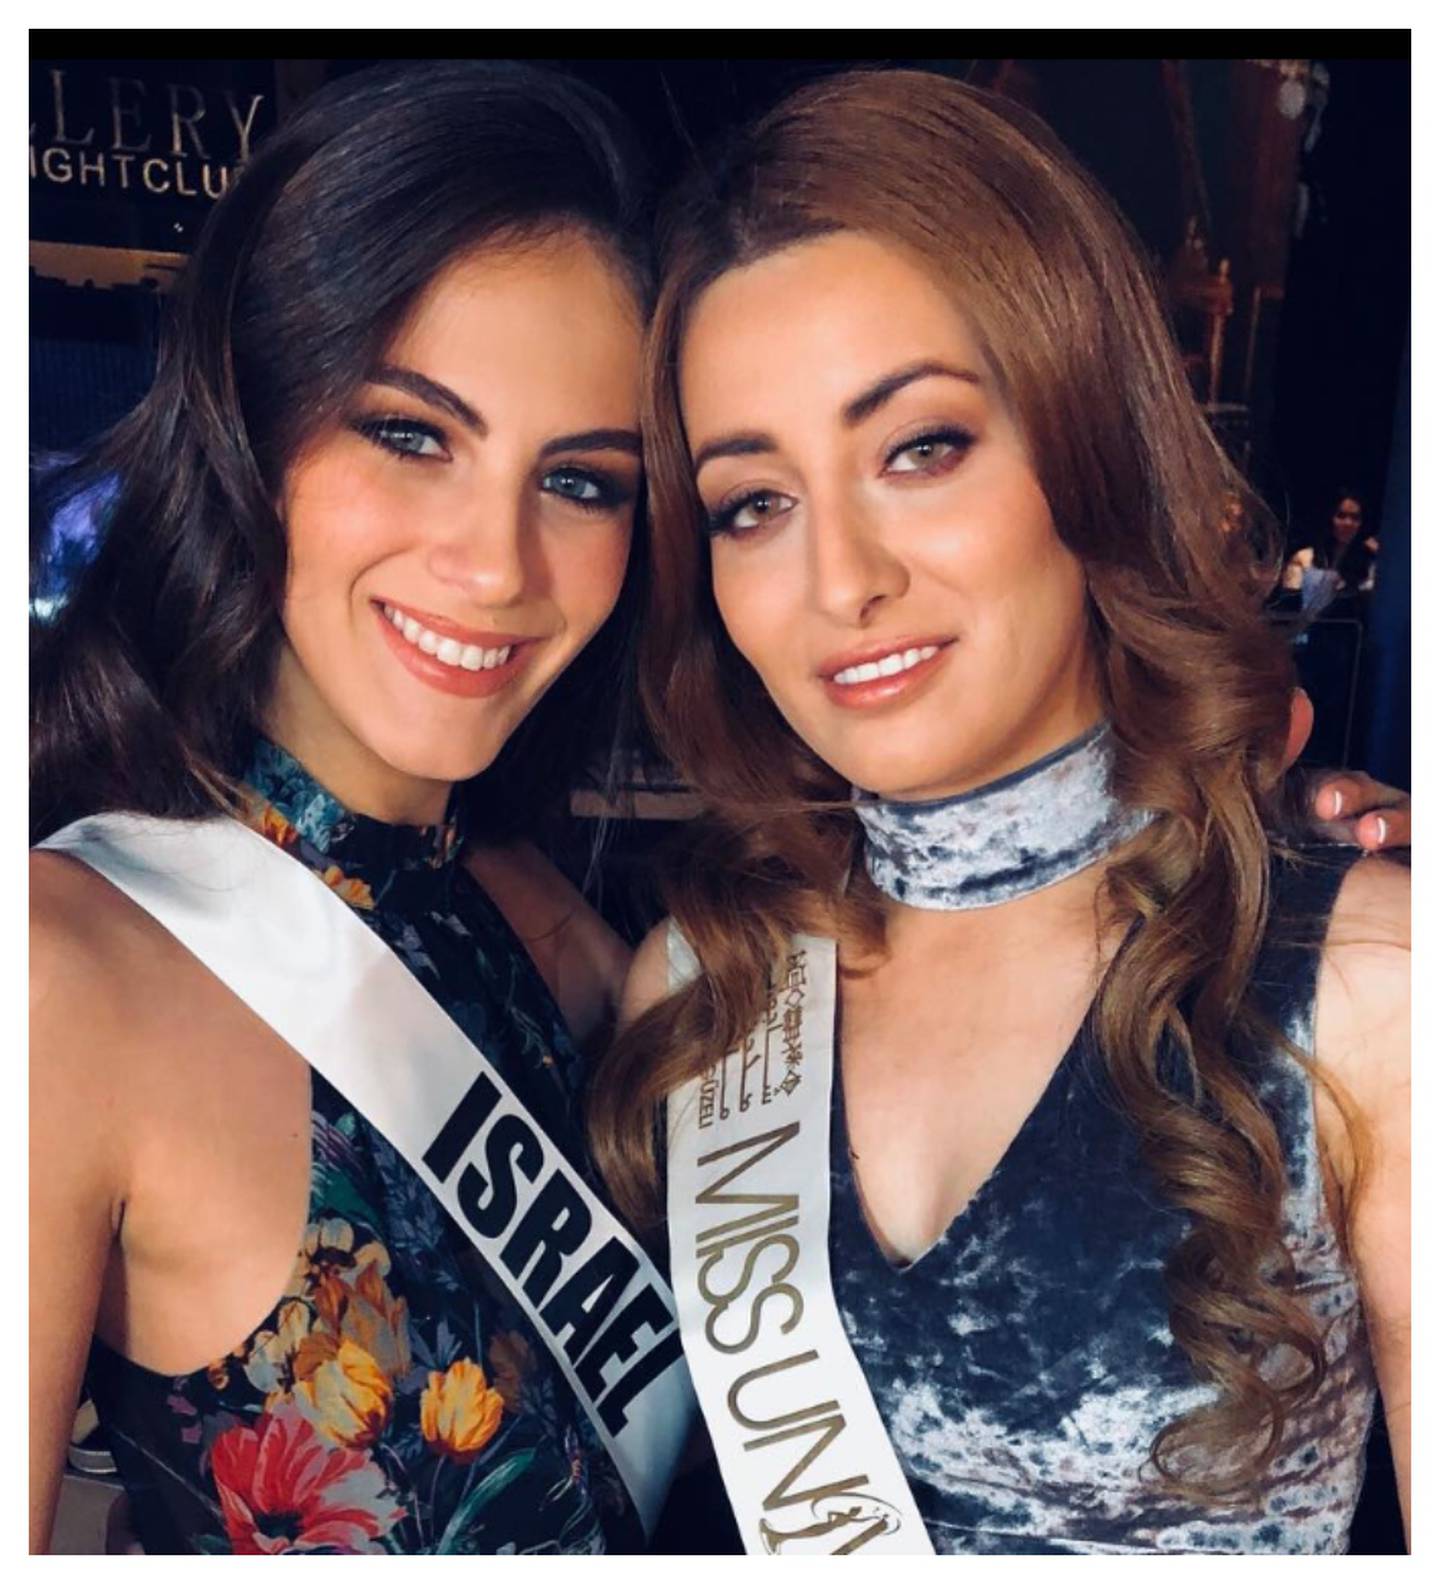 La determinación de fotografiarse con la Miss Israel significó para Sarah Idan que en Irak su acción fuera considerada una traición.